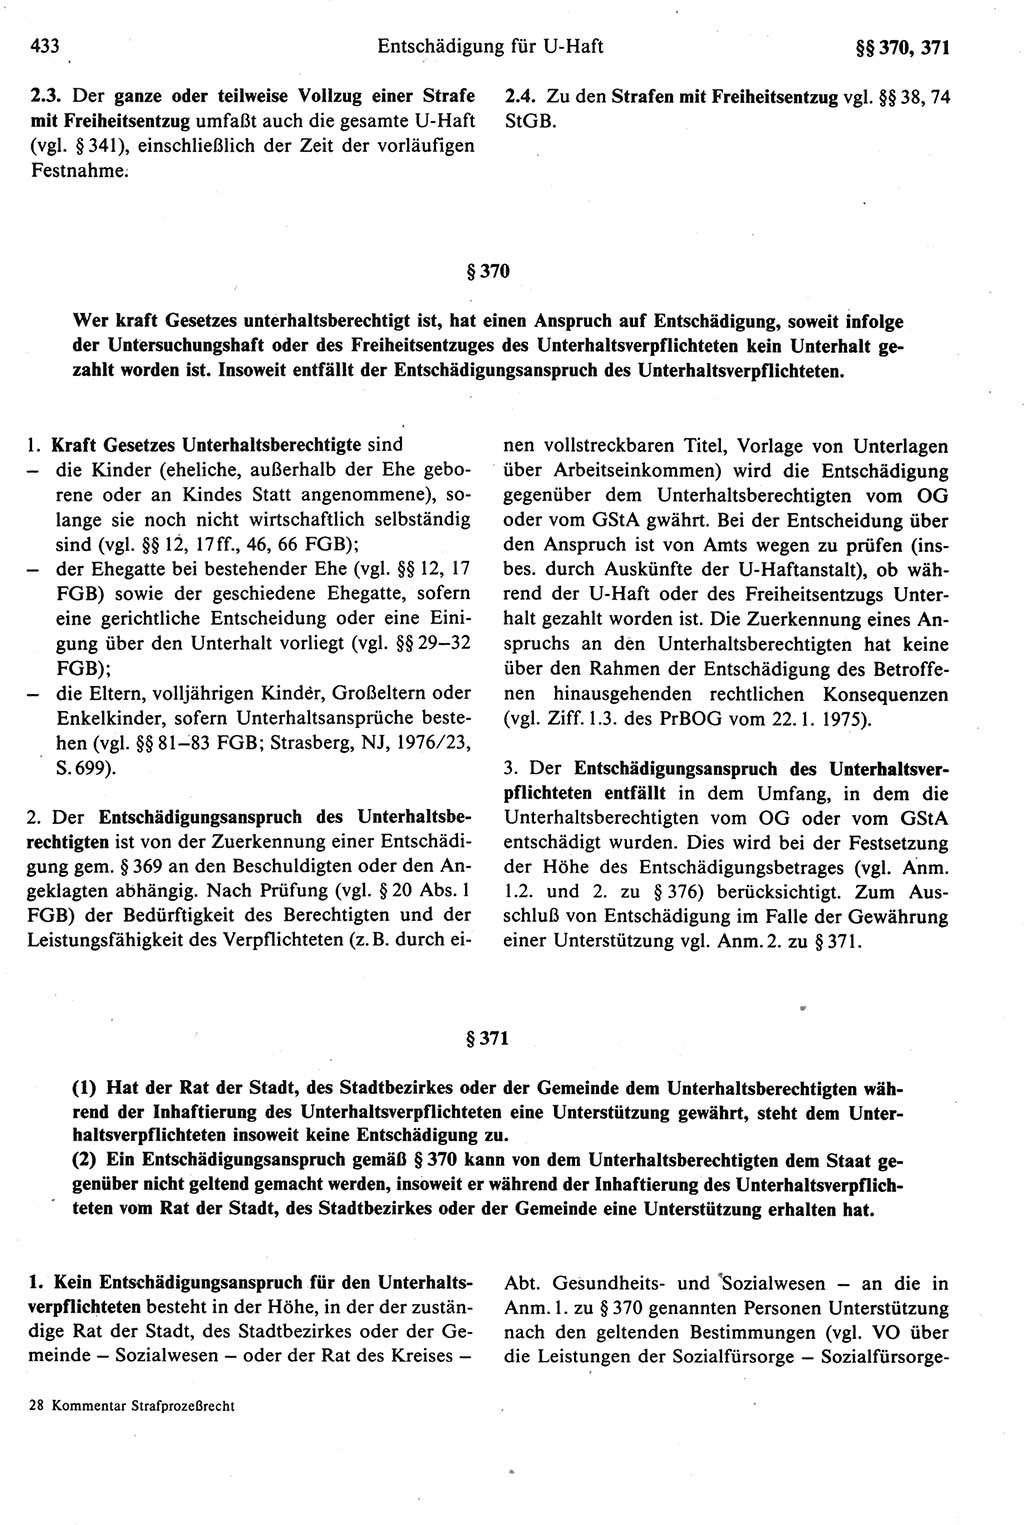 Strafprozeßrecht der DDR [Deutsche Demokratische Republik], Kommentar zur Strafprozeßordnung (StPO) 1987, Seite 433 (Strafprozeßr. DDR Komm. StPO 1987, S. 433)